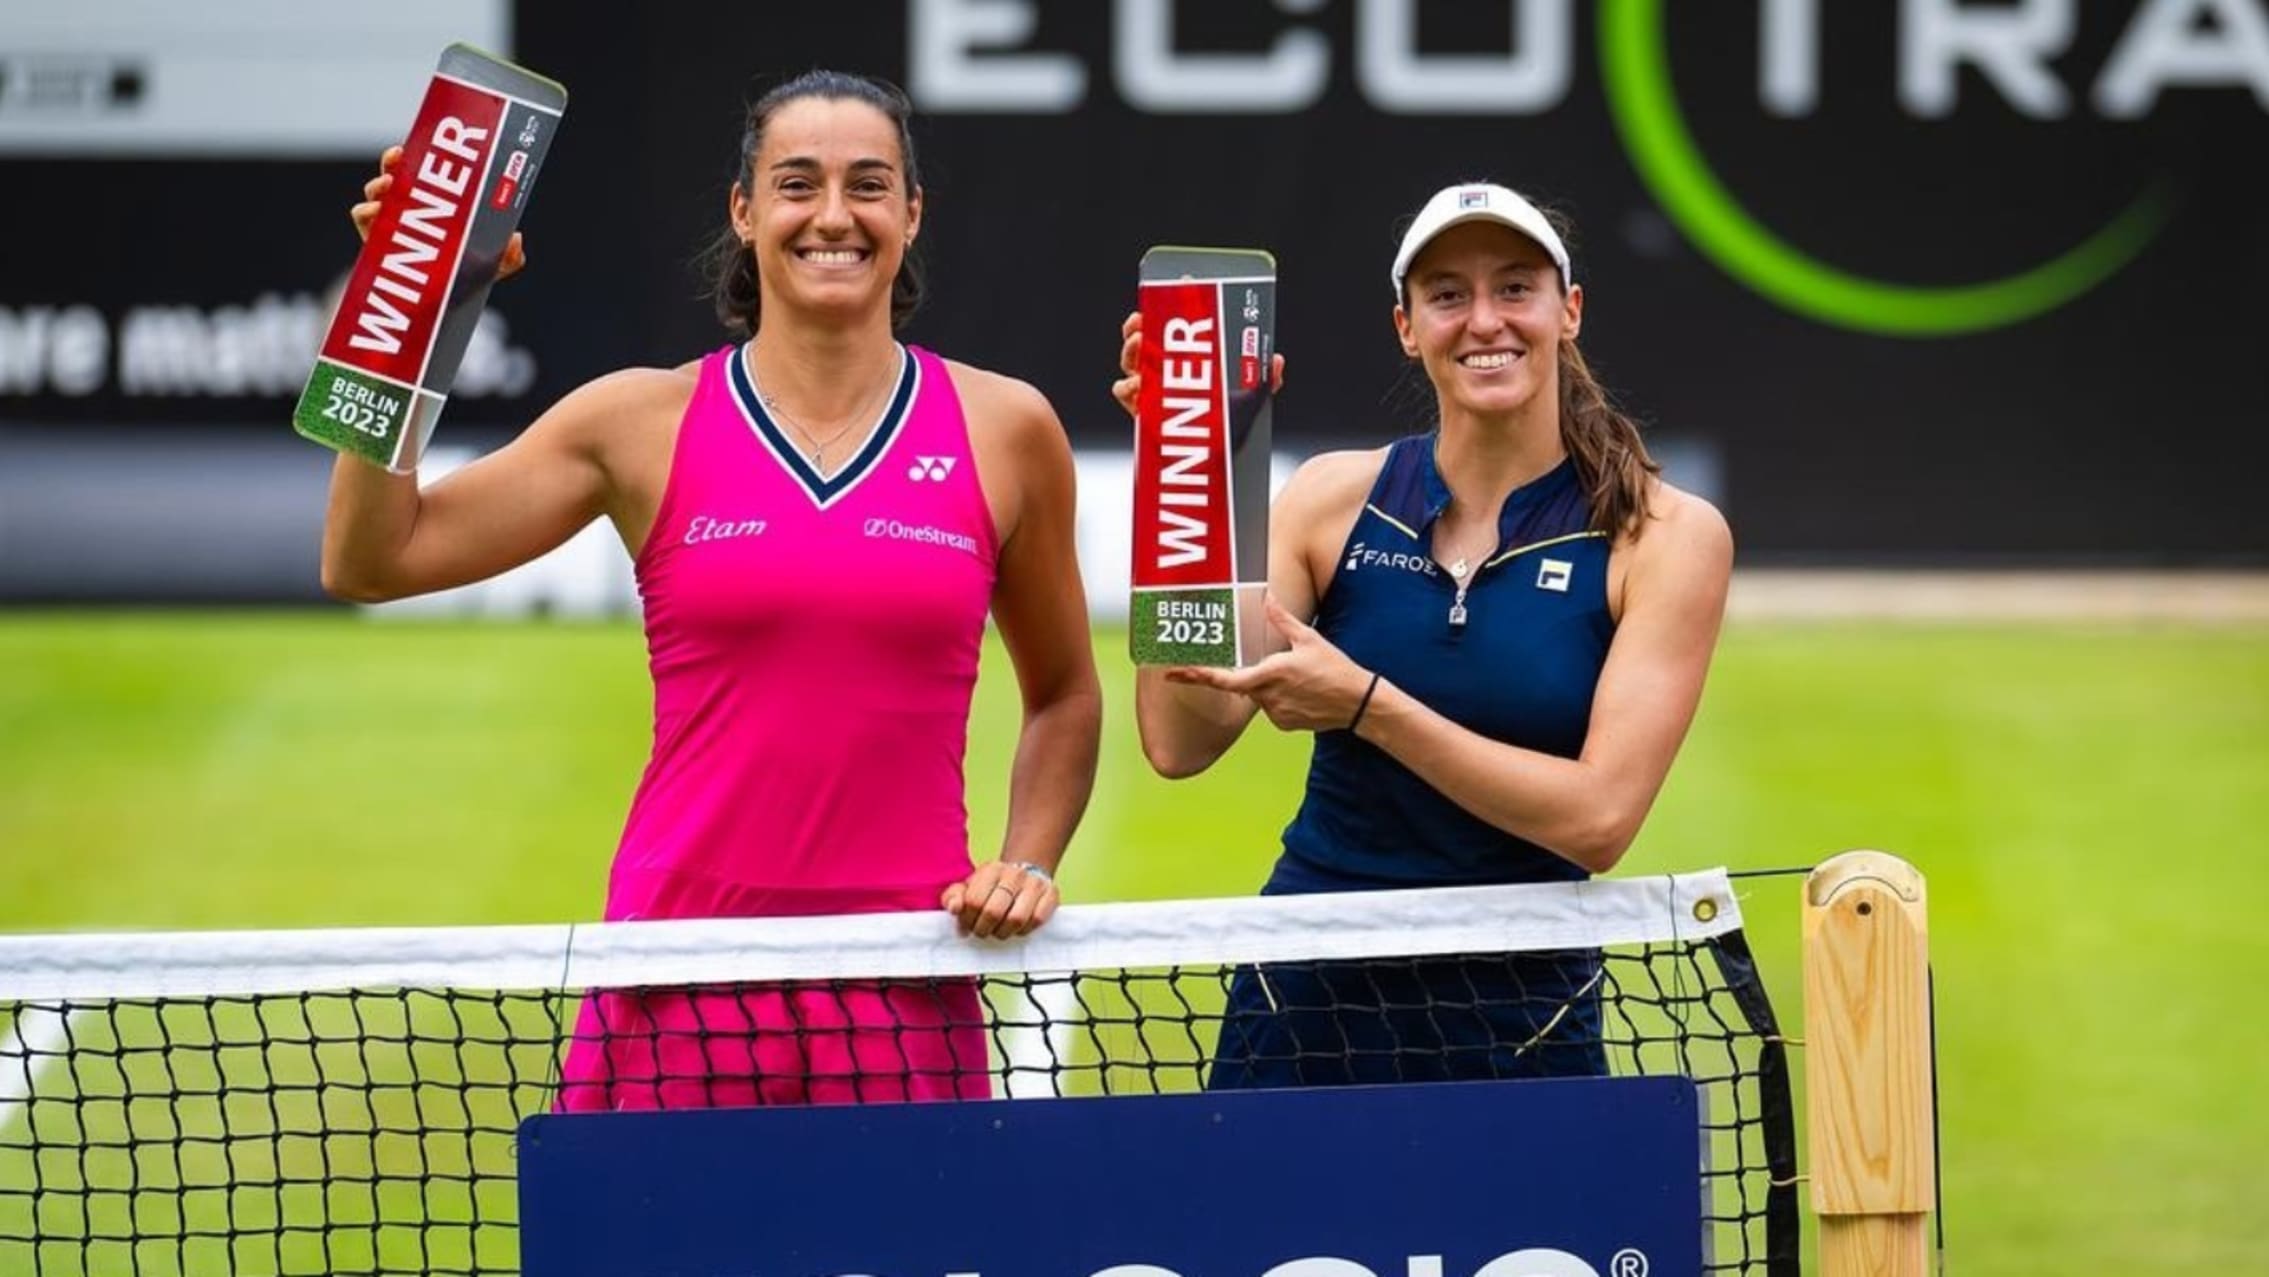 Luisa Stefani e Marcelo Melo são campeões nas duplas em torneios